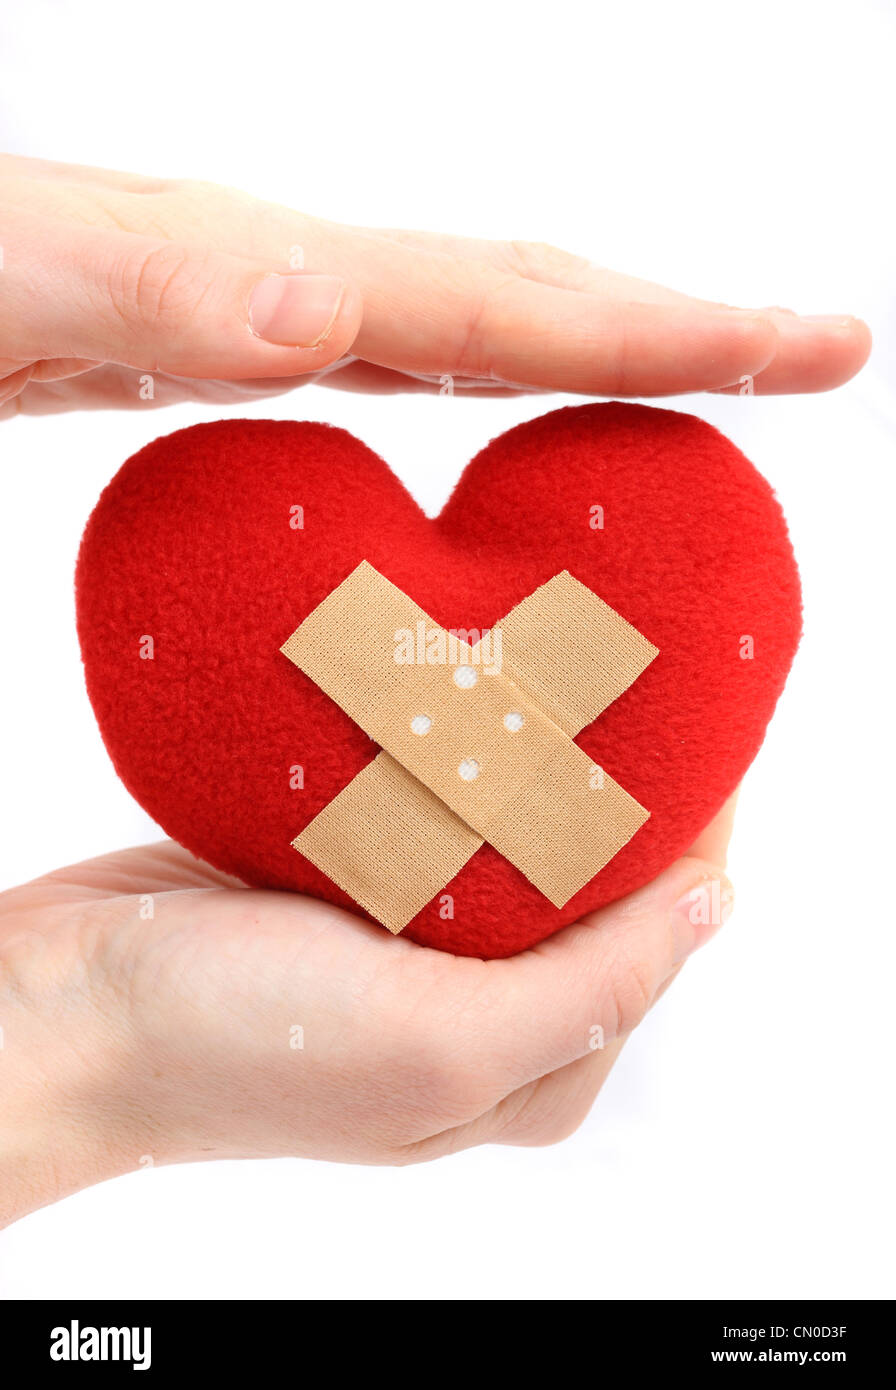 Symbolisches Bild, Herz-Kreislauferkrankungen, Herzinfarkt, Schutz, Prävention, Kardiologie. Hände halten ein rotes Herz mit einem Pflaster. Stockfoto